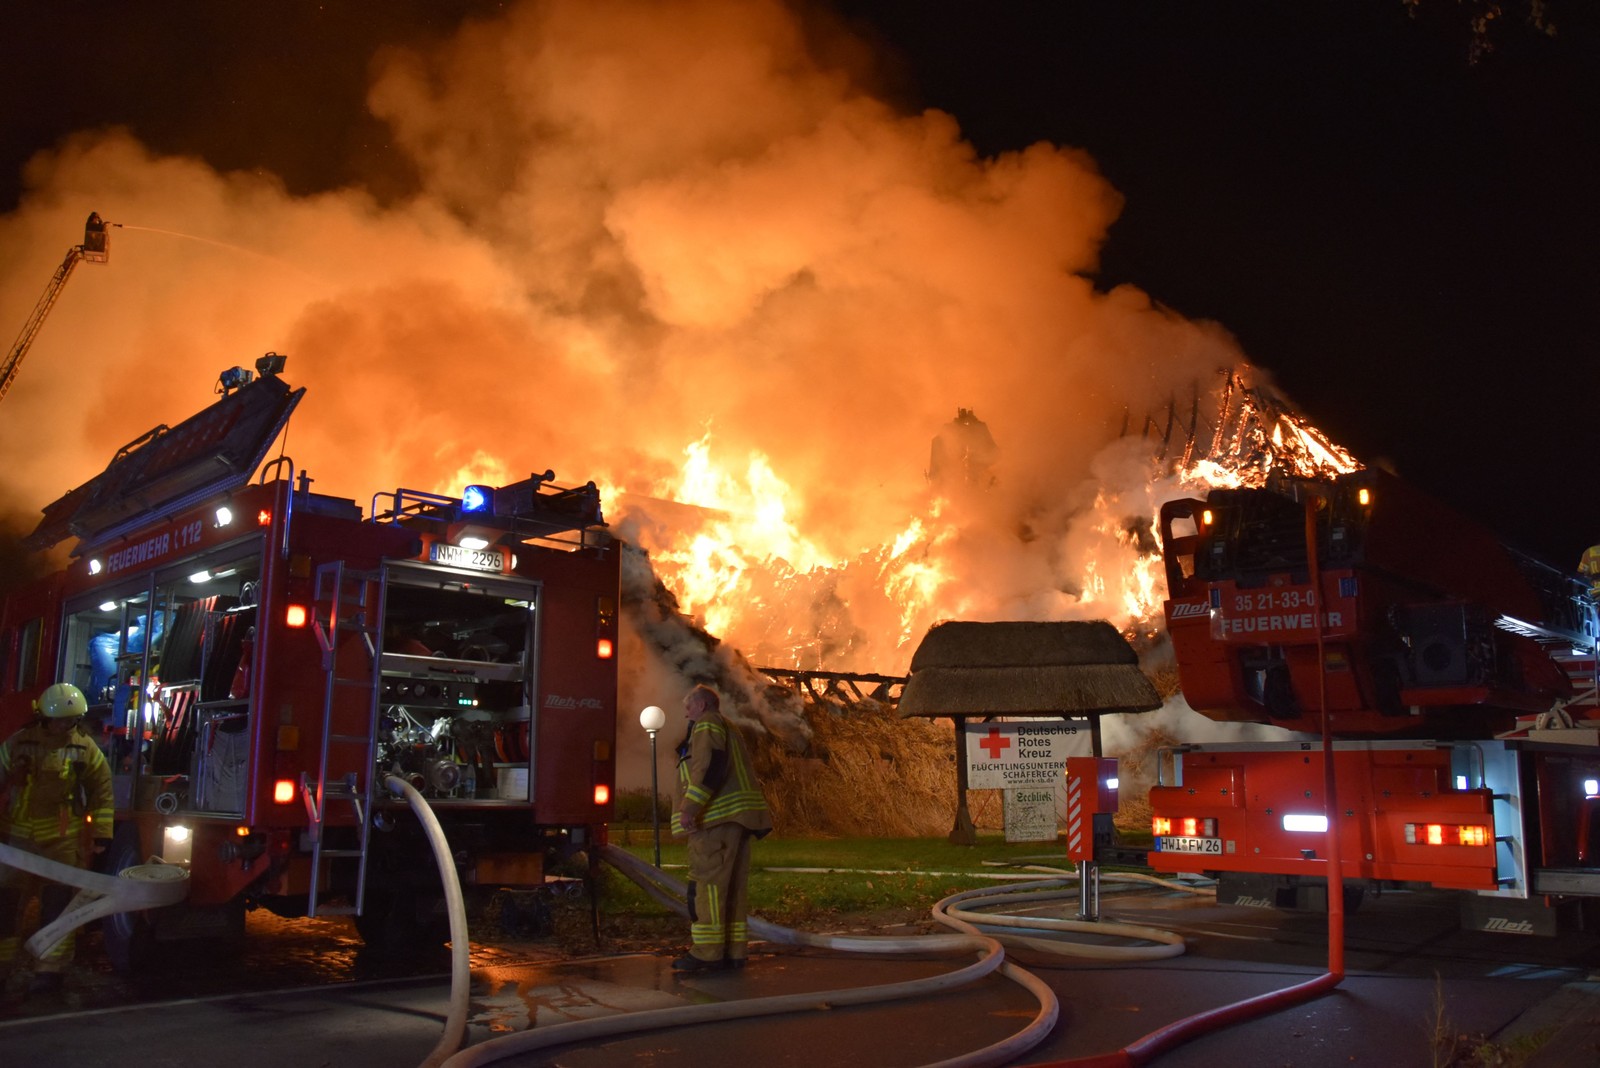 Bombeiros combatem incêndio em prédio que abrigava refugiados ucranianos em Gross Stroemkendorf, leste da Alemanha. Investiga-se motivação criminosa — Foto: NICOLE BUCHMANN / AFP